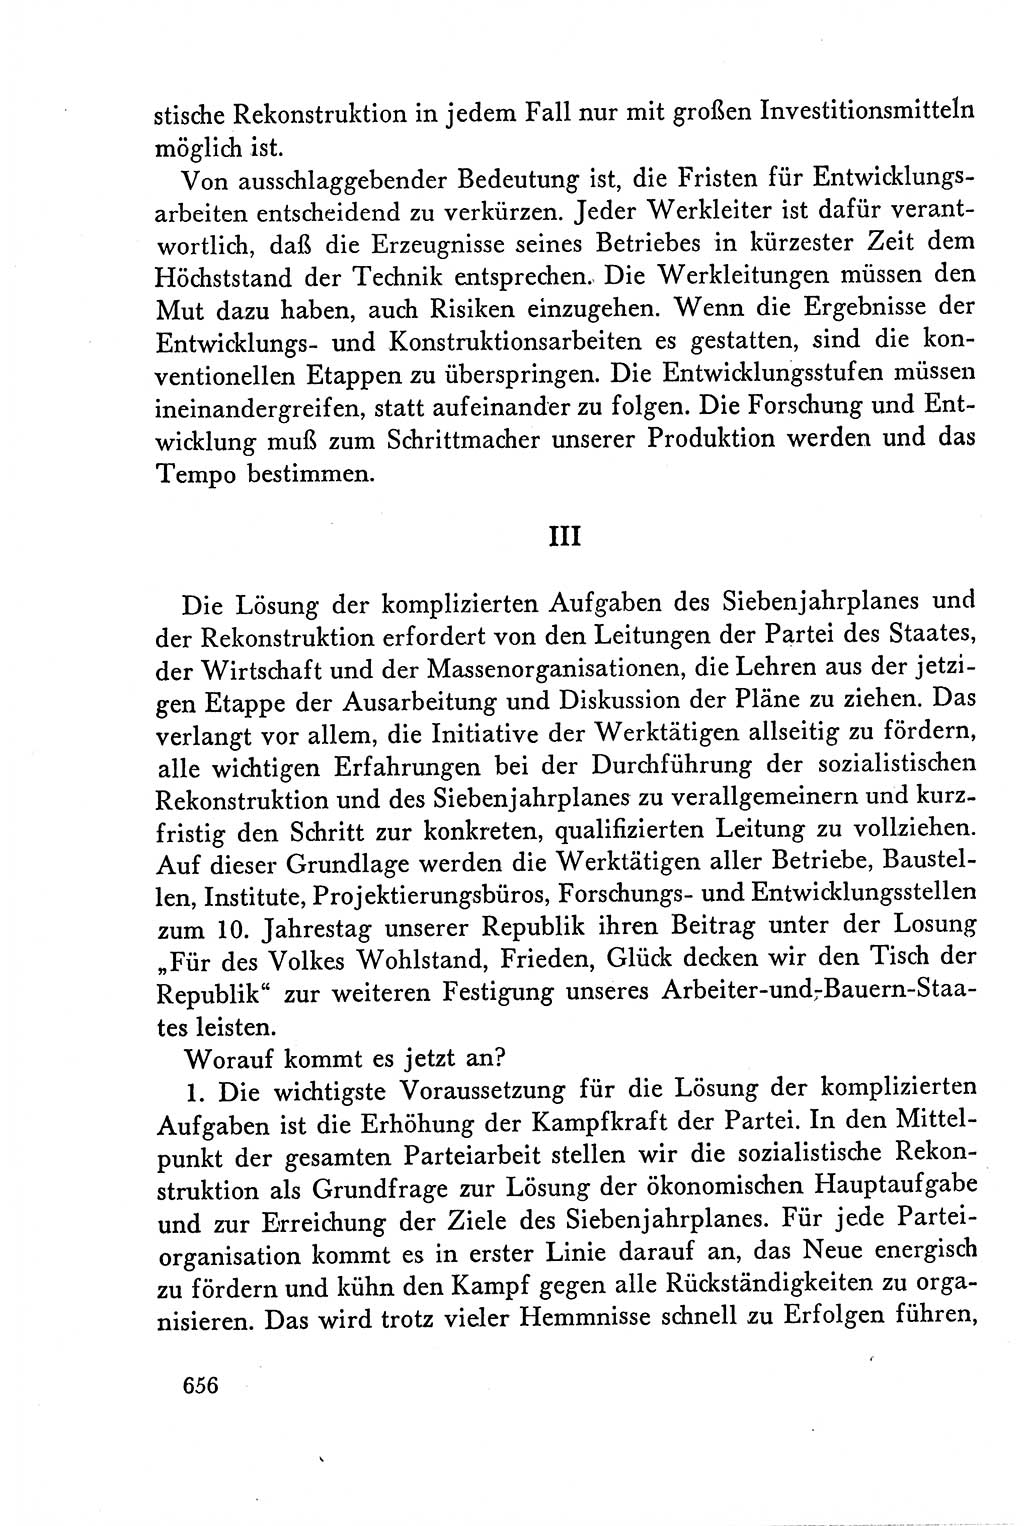 Dokumente der Sozialistischen Einheitspartei Deutschlands (SED) [Deutsche Demokratische Republik (DDR)] 1958-1959, Seite 656 (Dok. SED DDR 1958-1959, S. 656)